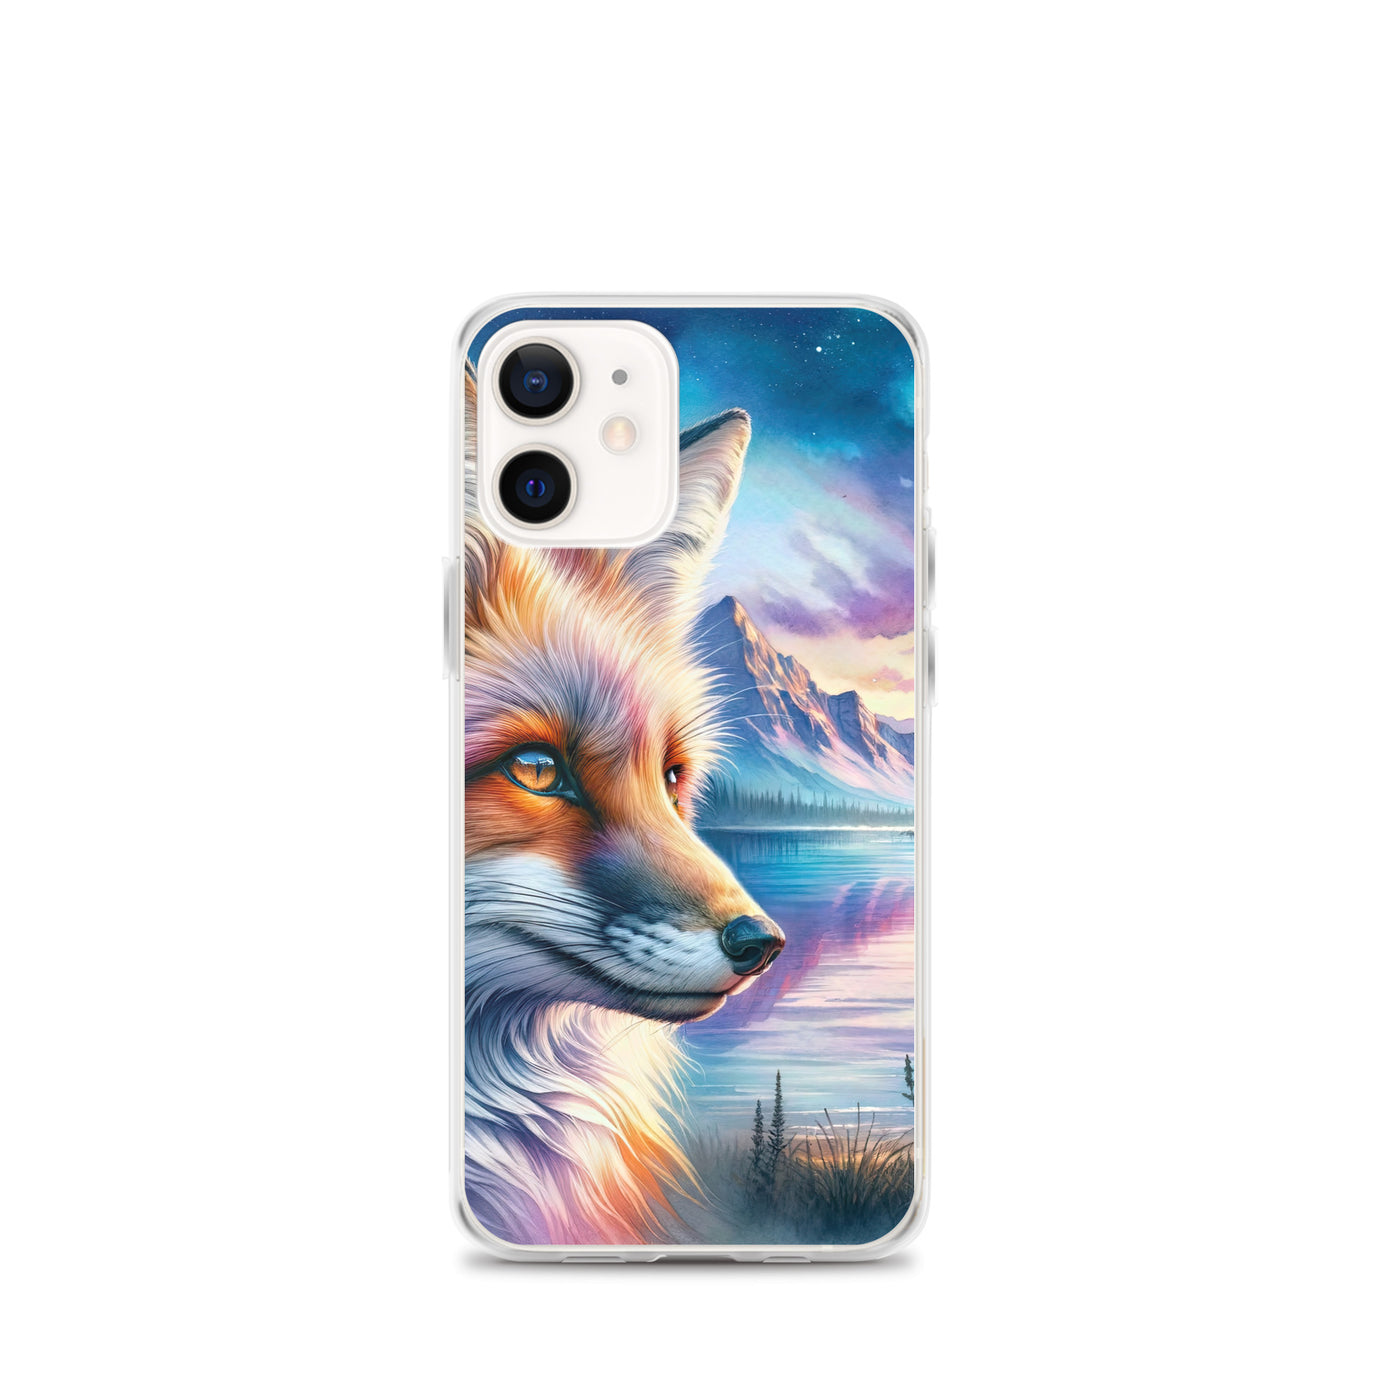 Aquarellporträt eines Fuchses im Dämmerlicht am Bergsee - iPhone Schutzhülle (durchsichtig) camping xxx yyy zzz iPhone 12 mini